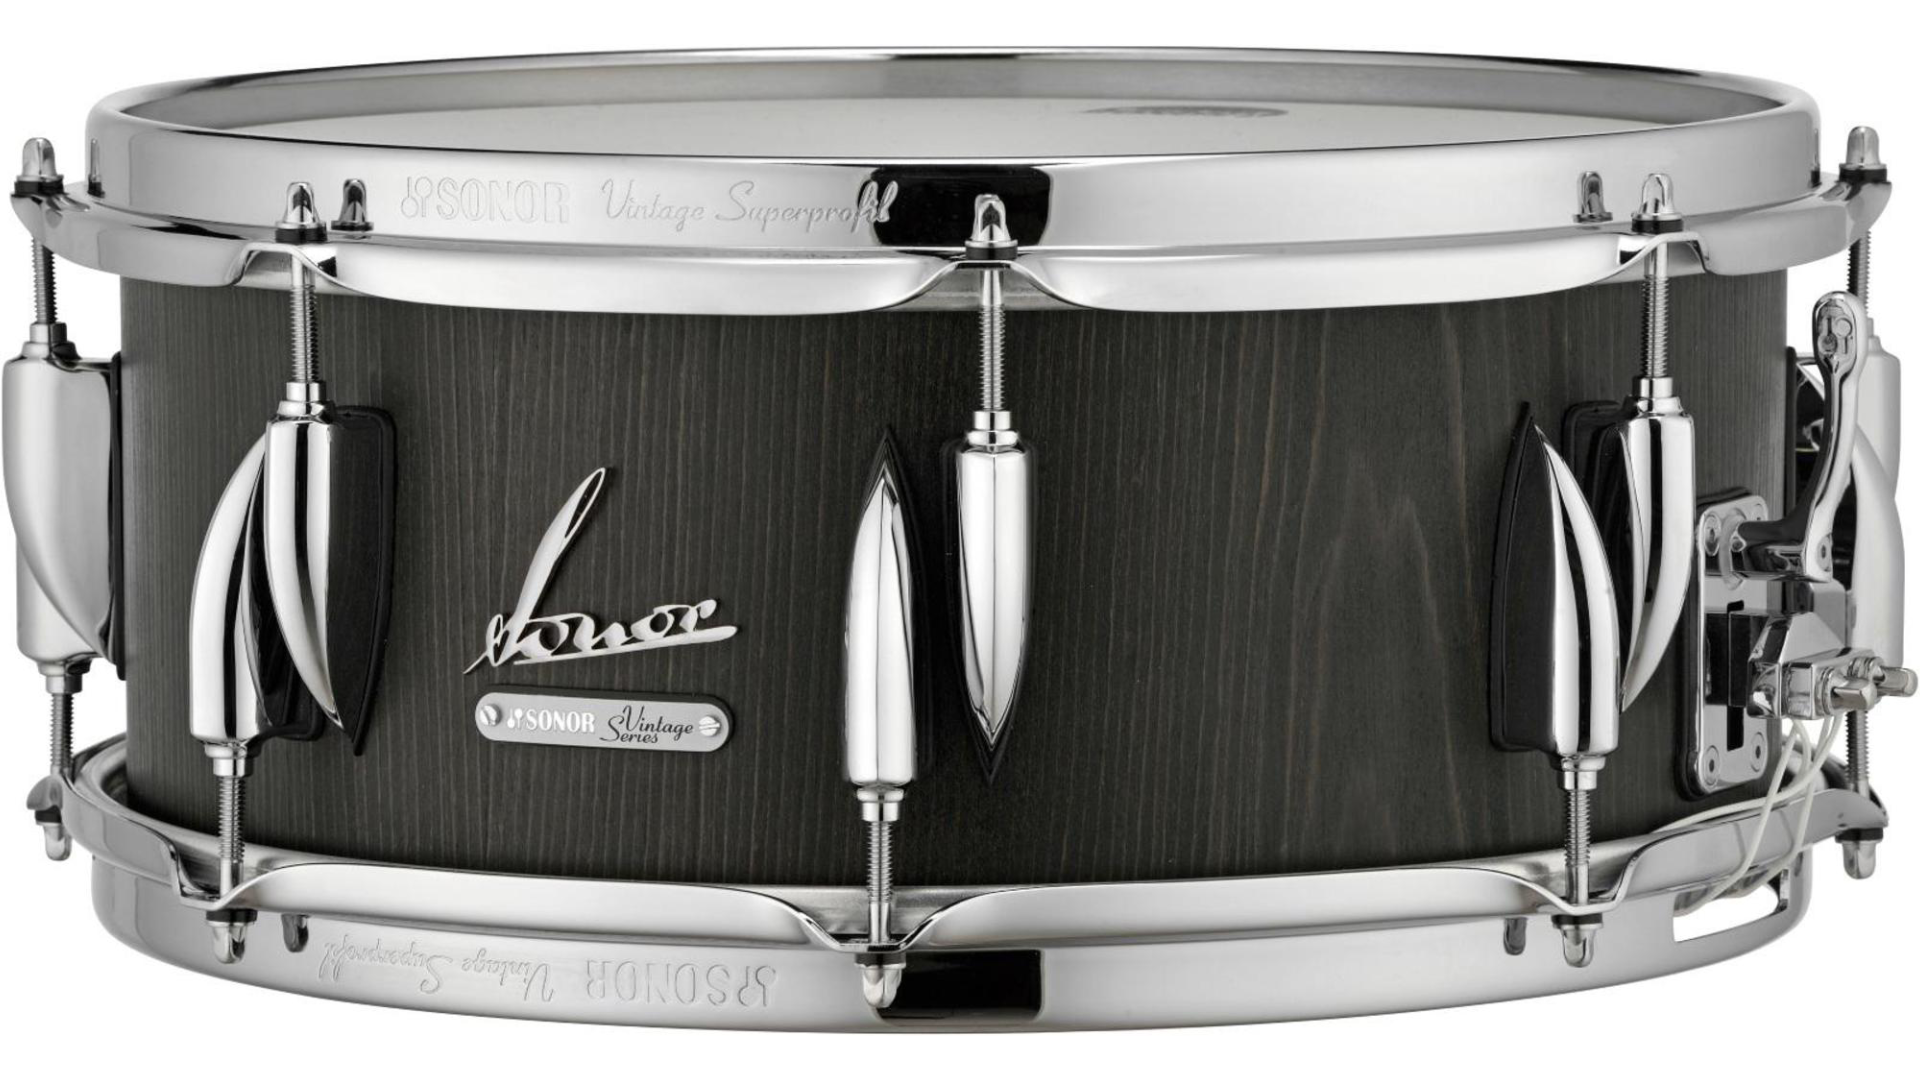 Sonor Vintage Series Snare Drum 14 x 6.5 in. Vintage Onyx